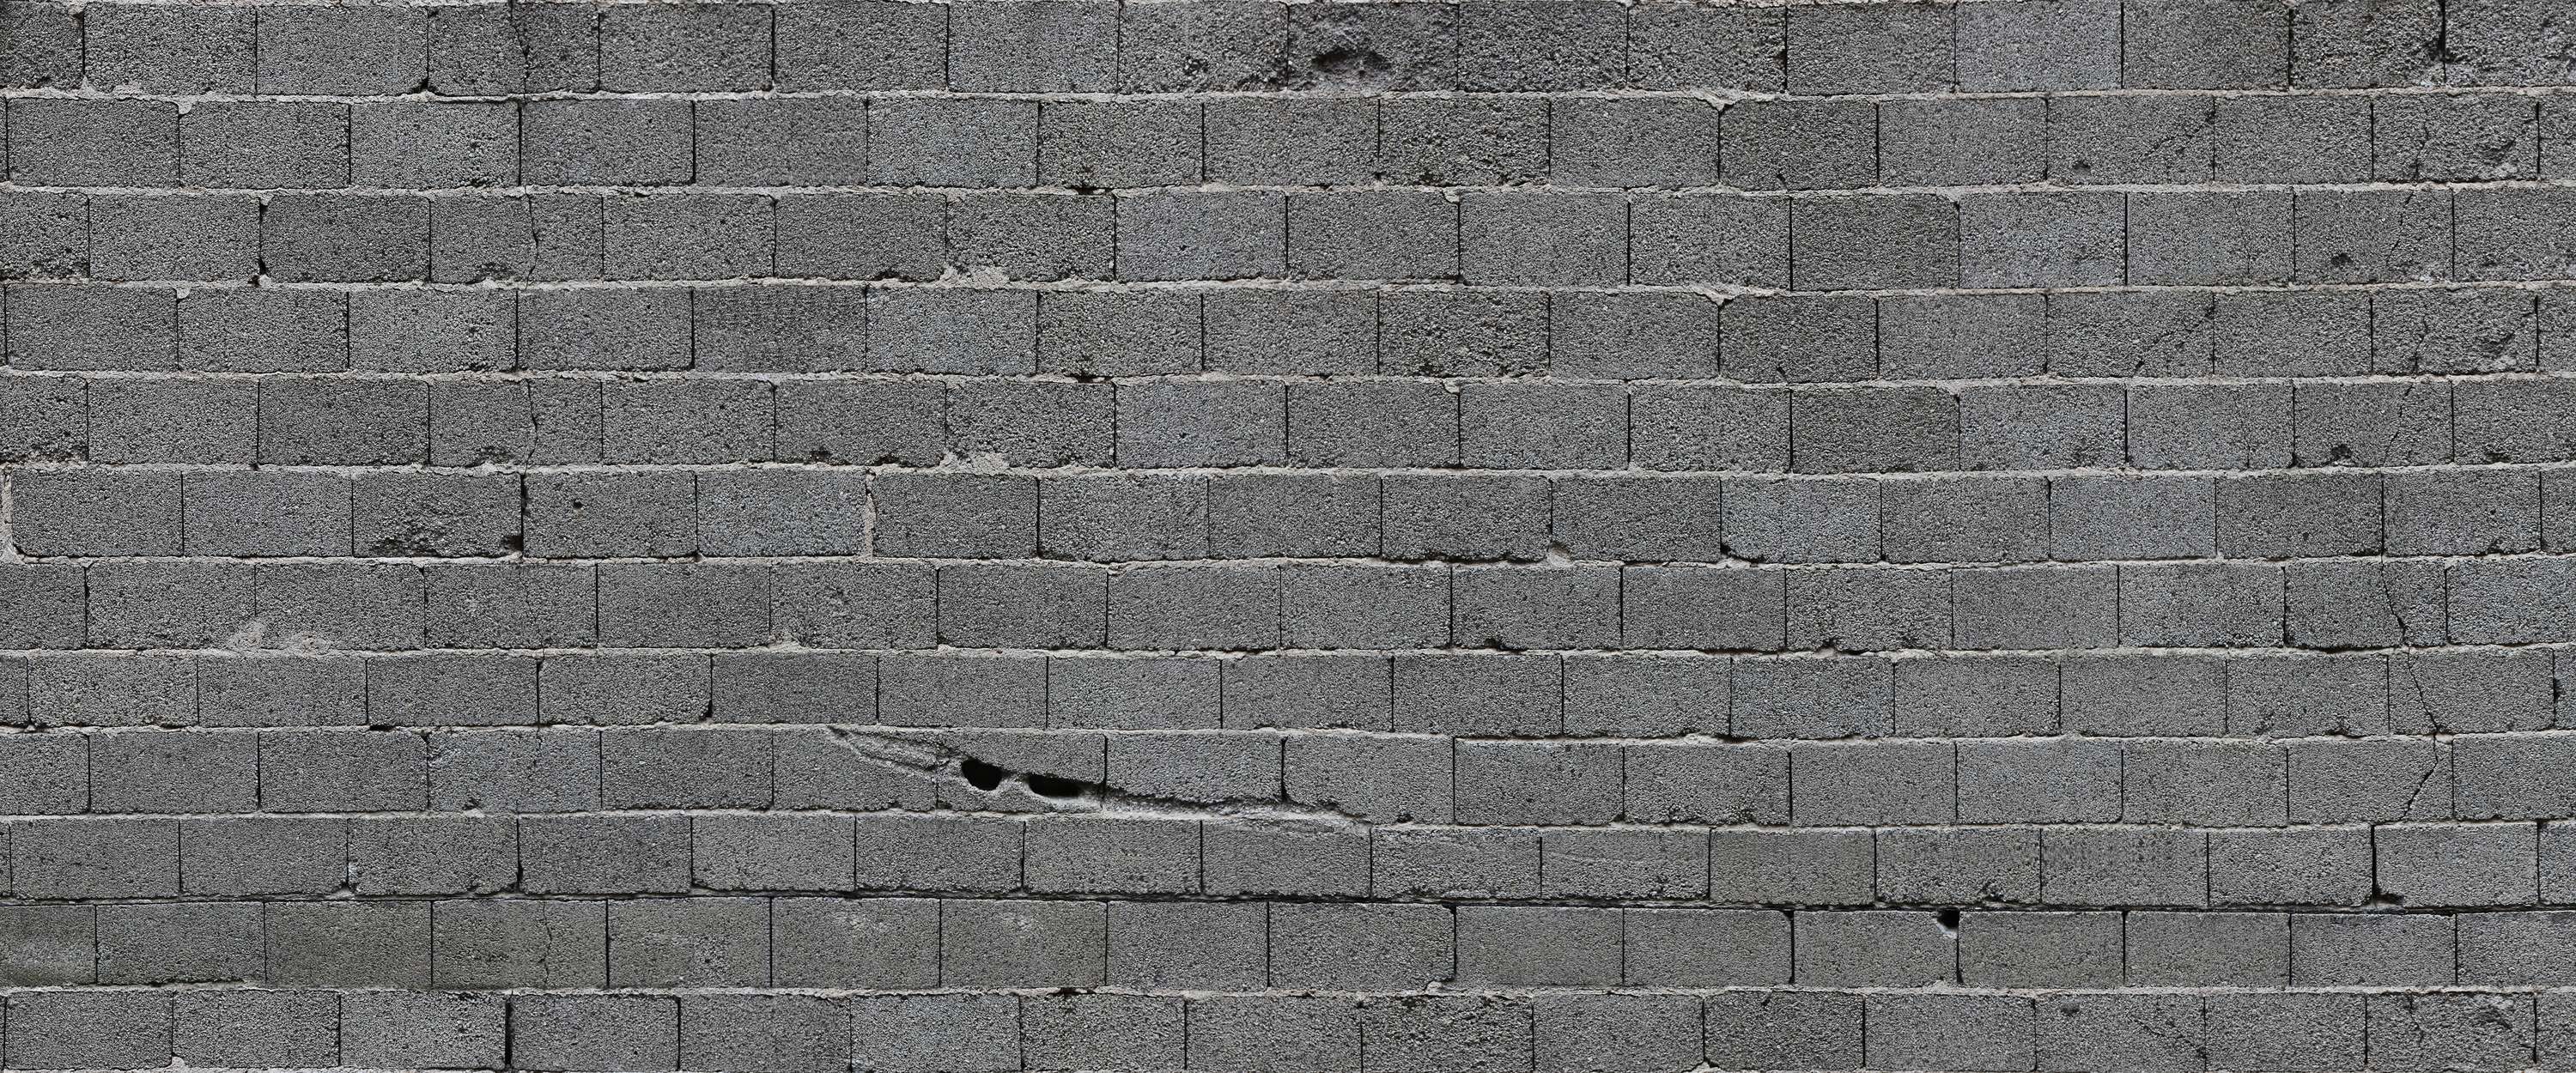             Fototapete graue Steinmauer mit Betonbausteinen
        